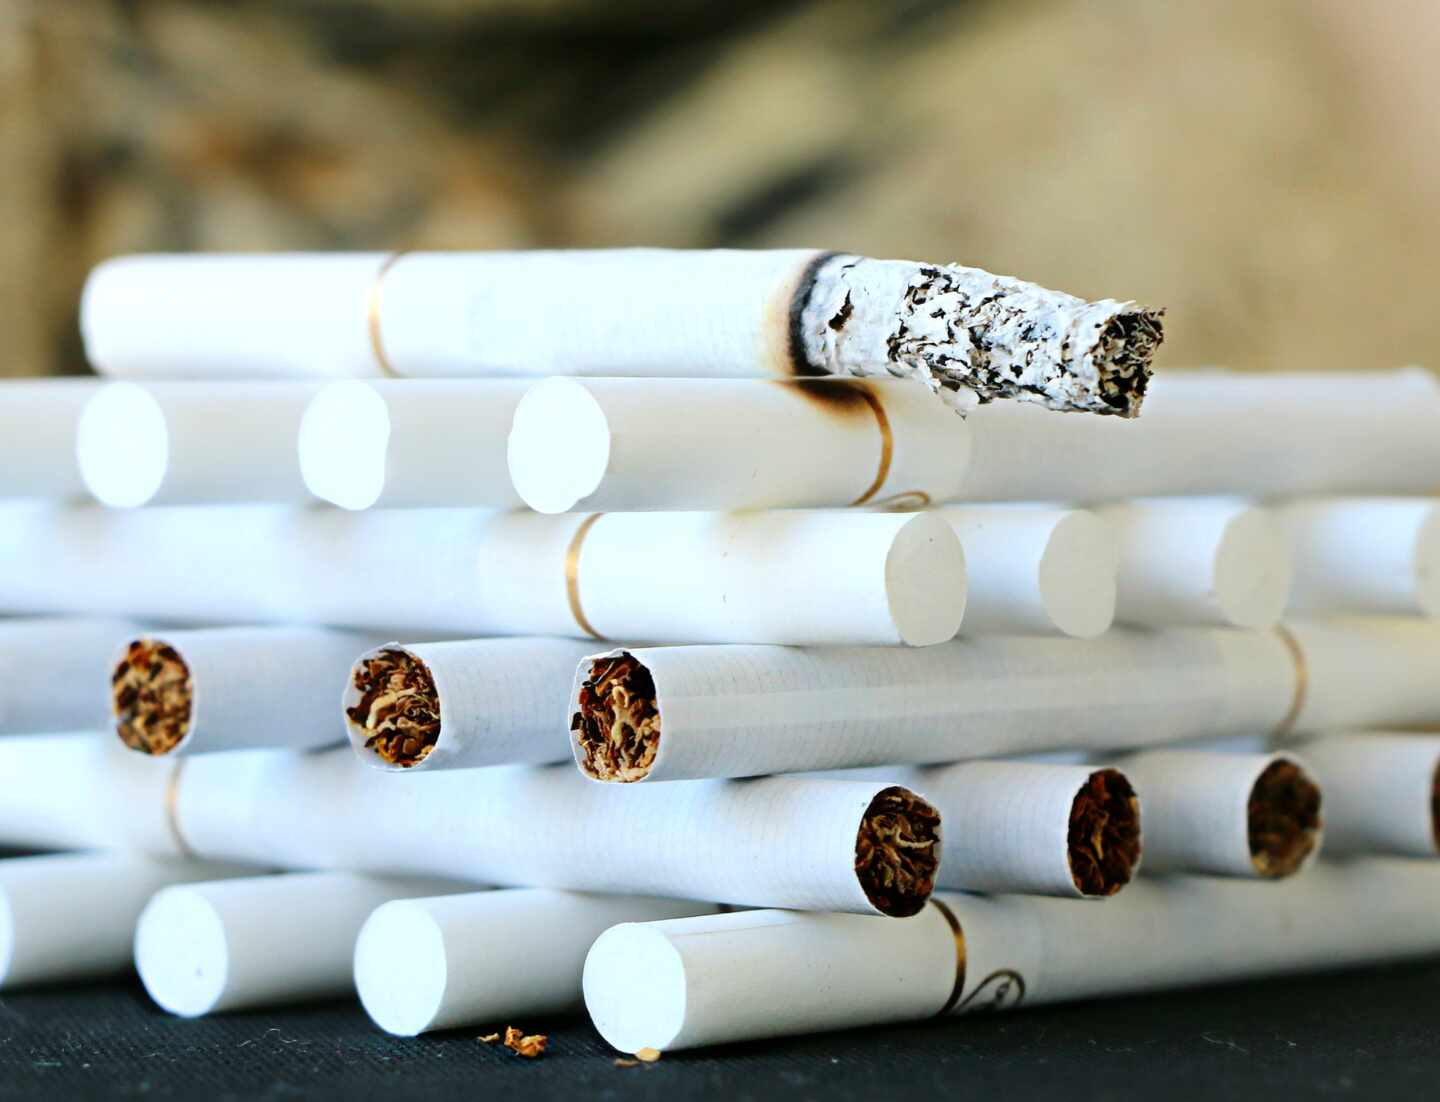 El tabaco mentolado no podrá fabricarse, distribuirse ni venderse desde este miércoles en España